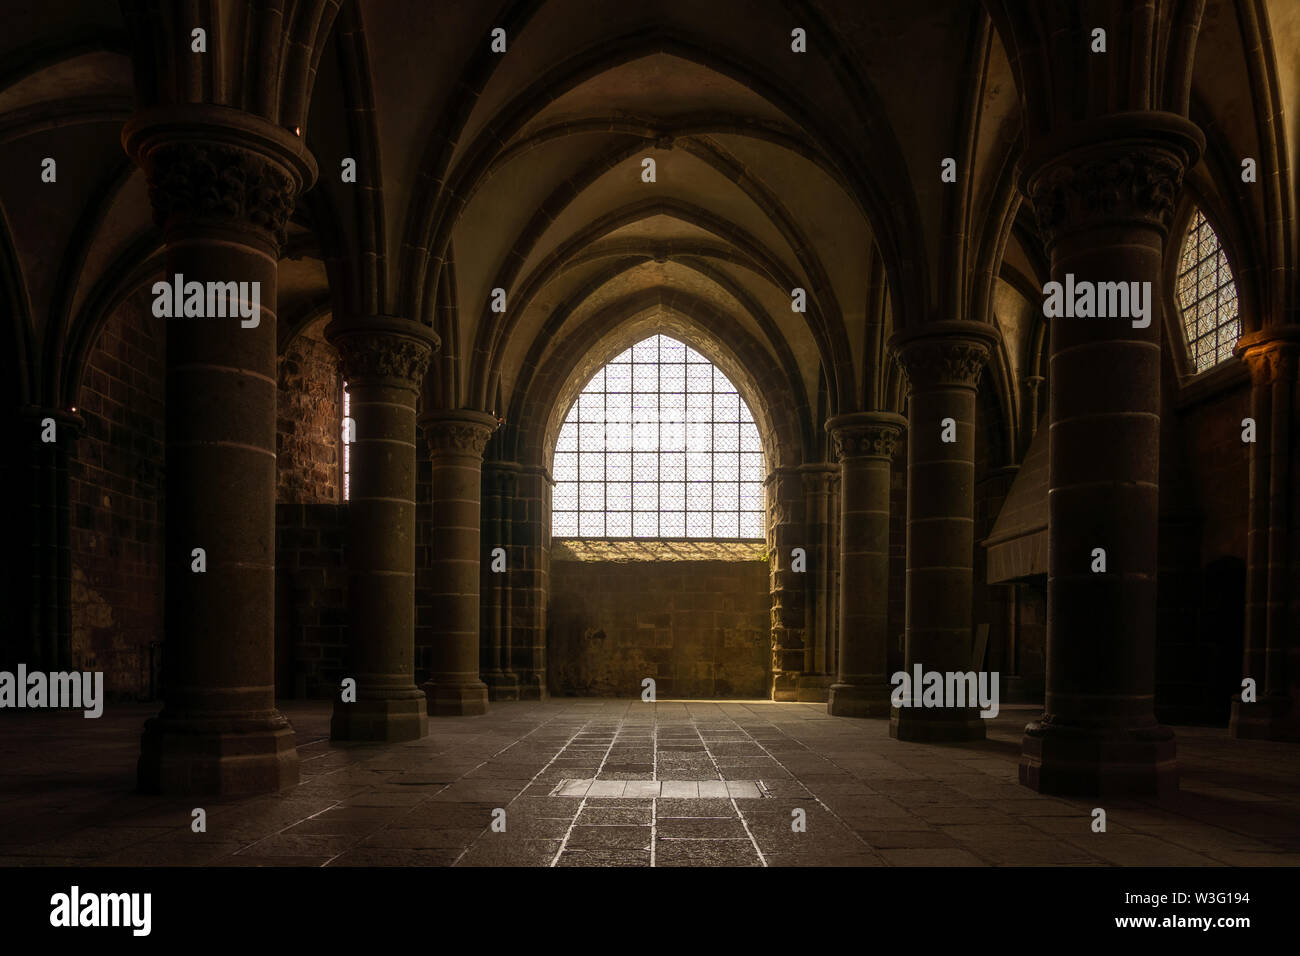 Salle des Chevaliers de l'abbaye du Mont Saint Michel, l'architecture gothique médiévale, voûtes en pierre et de colonnes, Normandie, France. Banque D'Images